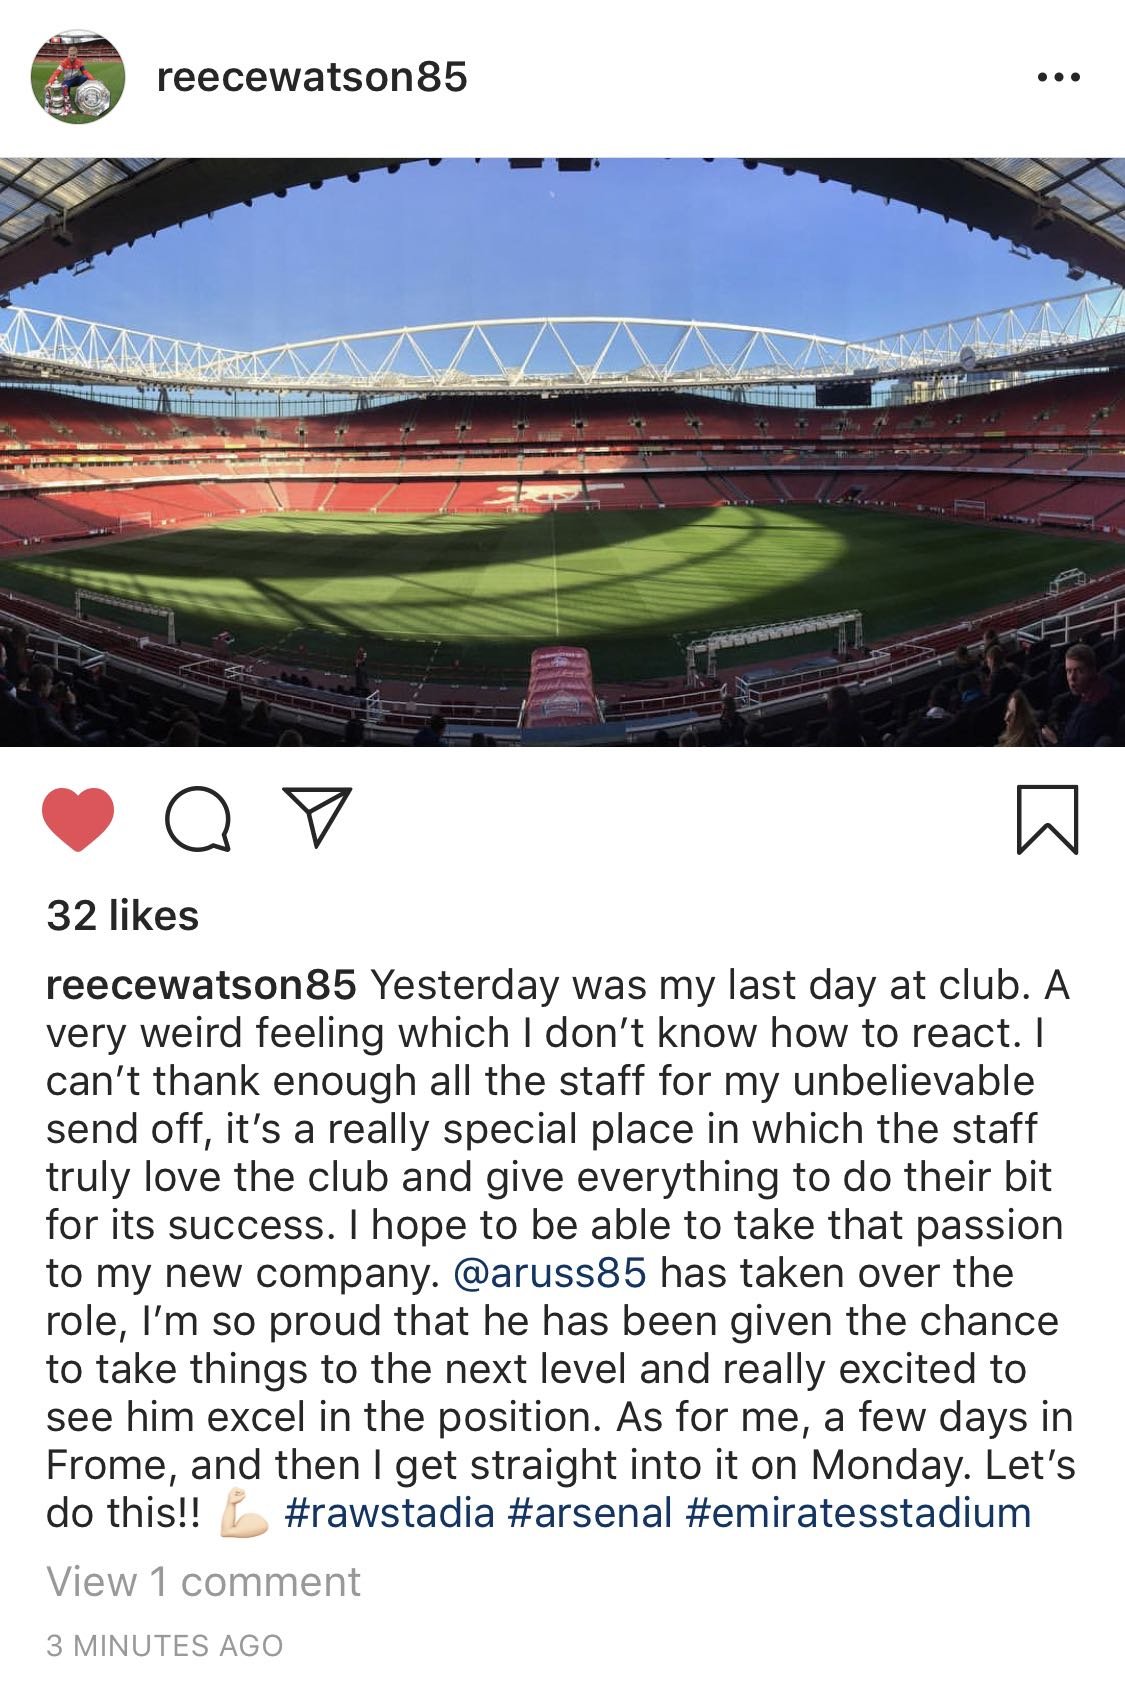 reece watson instagram post 16 february 2019